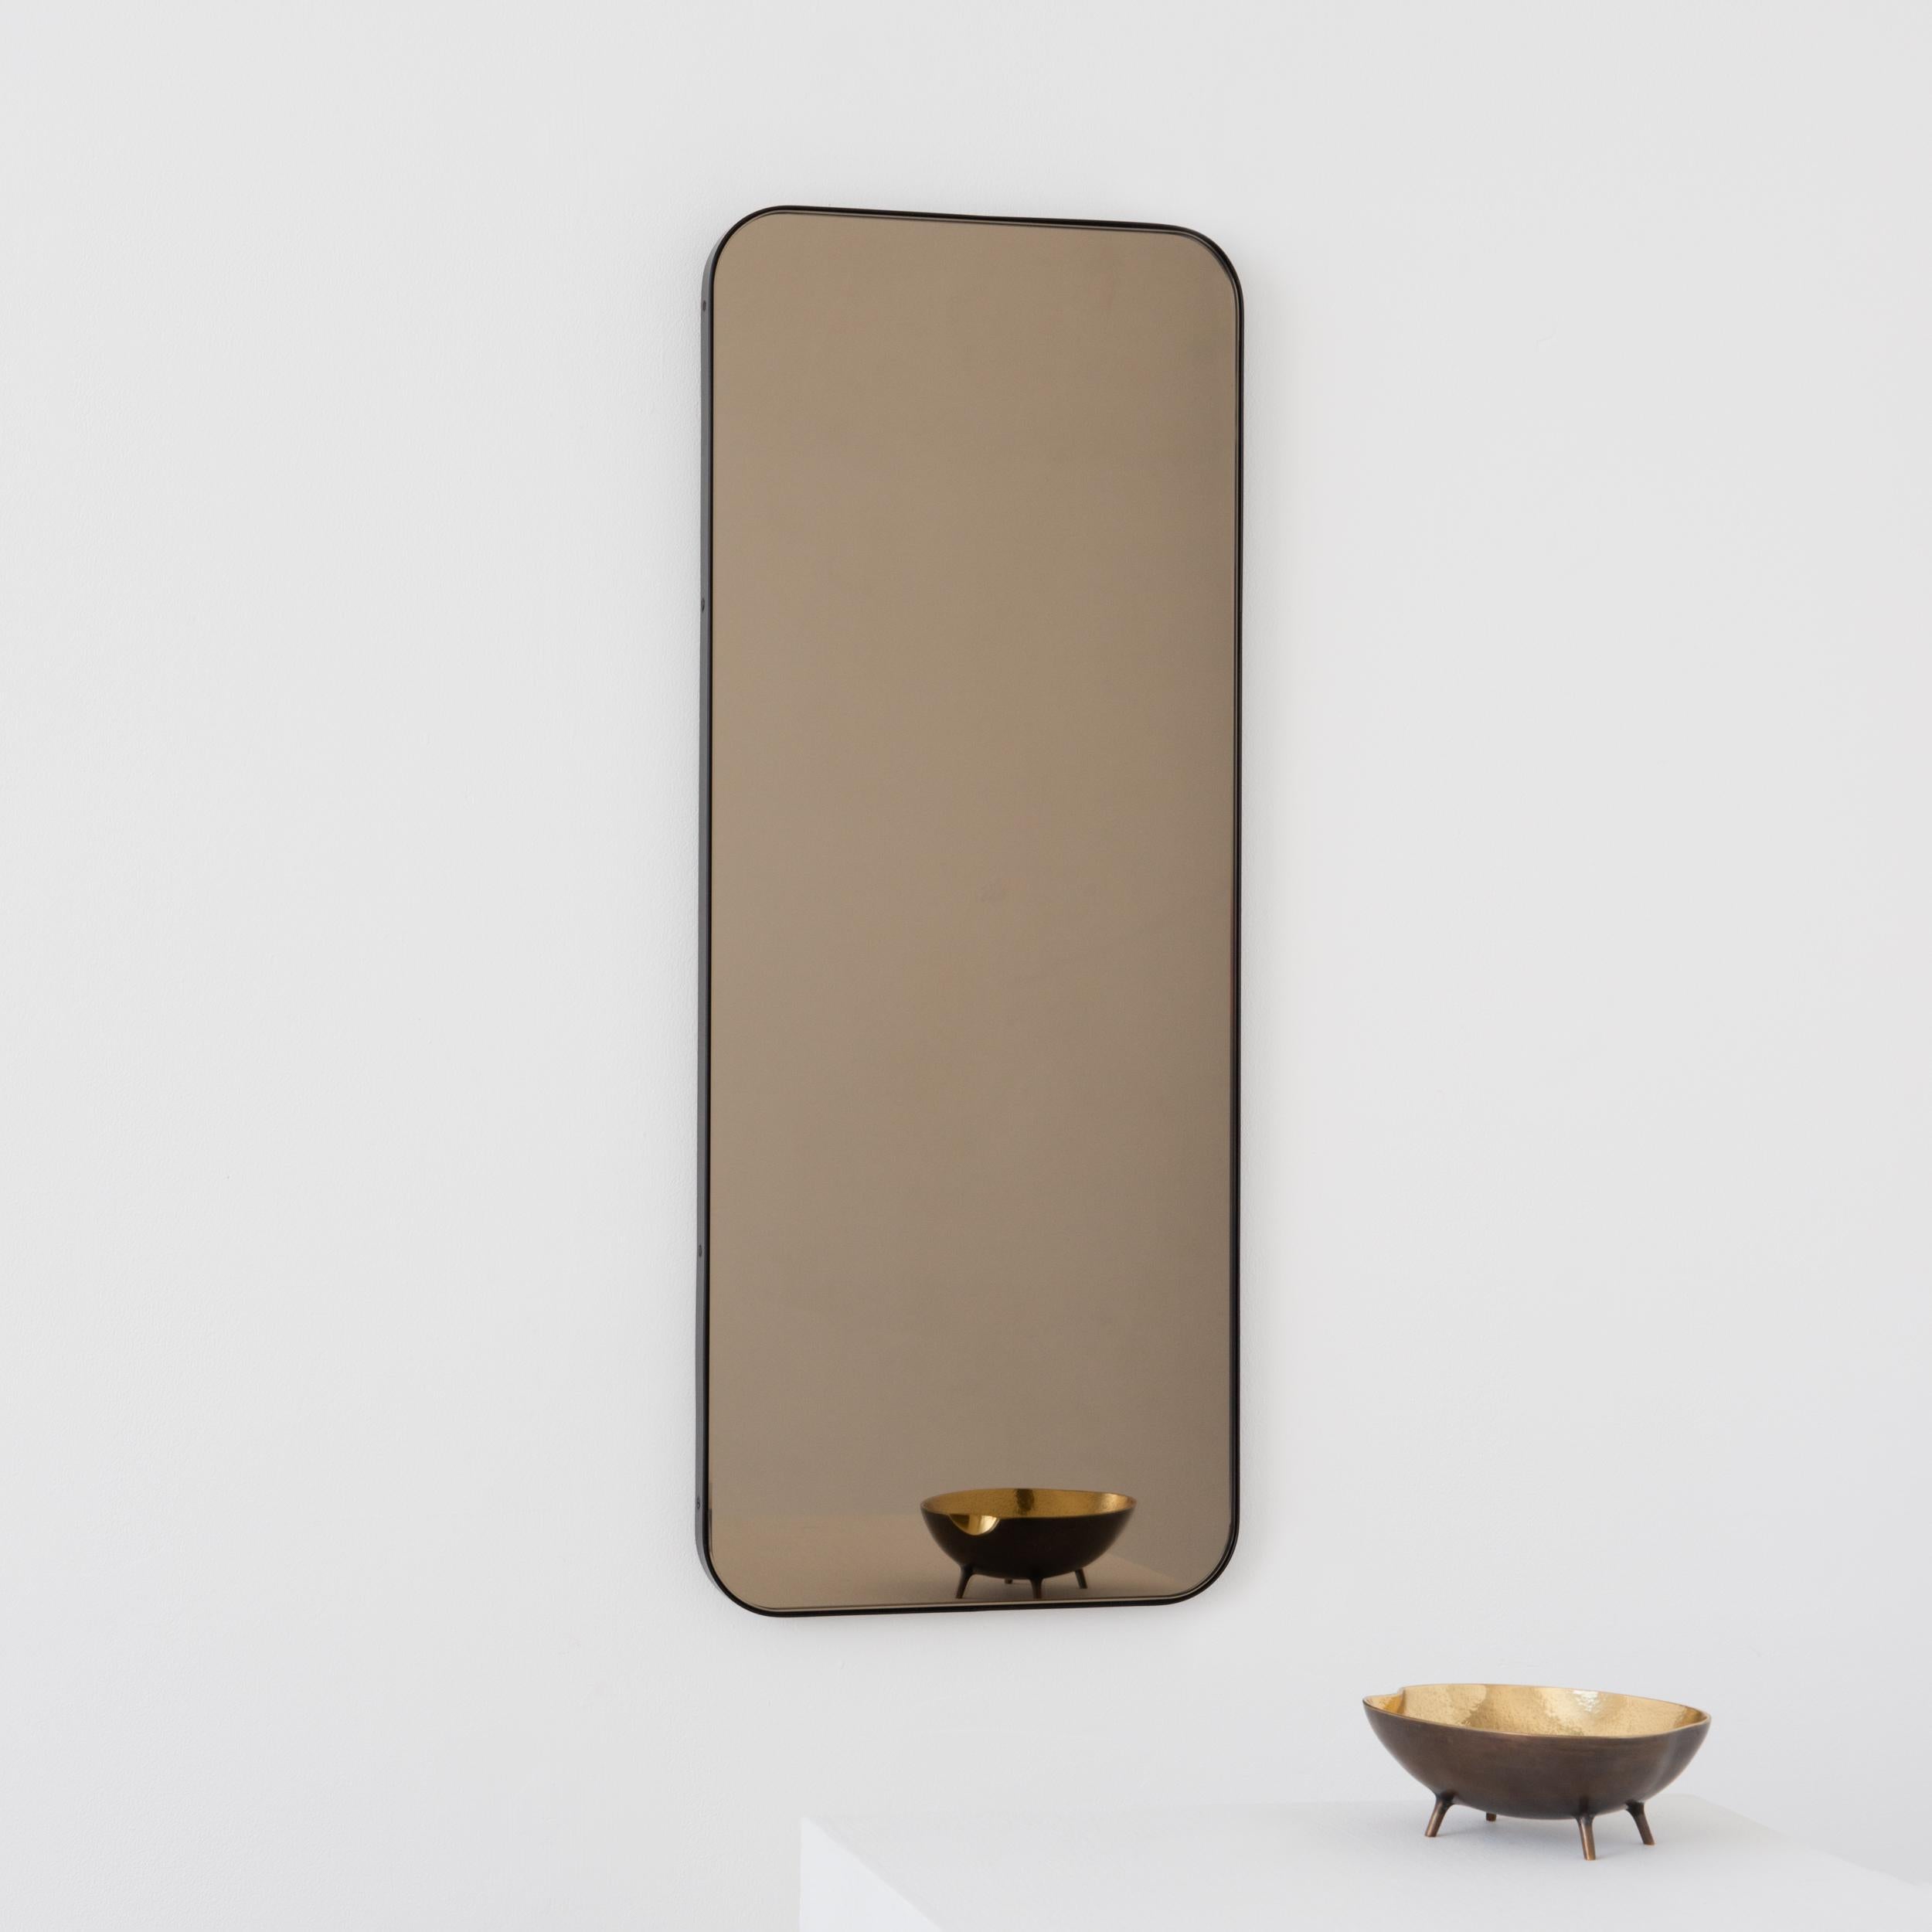 Miroir rectangulaire moderne avec un élégant cadre en laiton massif patiné bronze. Une partie de la charmante collection Quadris, conçue et fabriquée à la main à Londres, au Royaume-Uni. 

Les miroirs de taille moyenne, grande et extra-large (37cm x